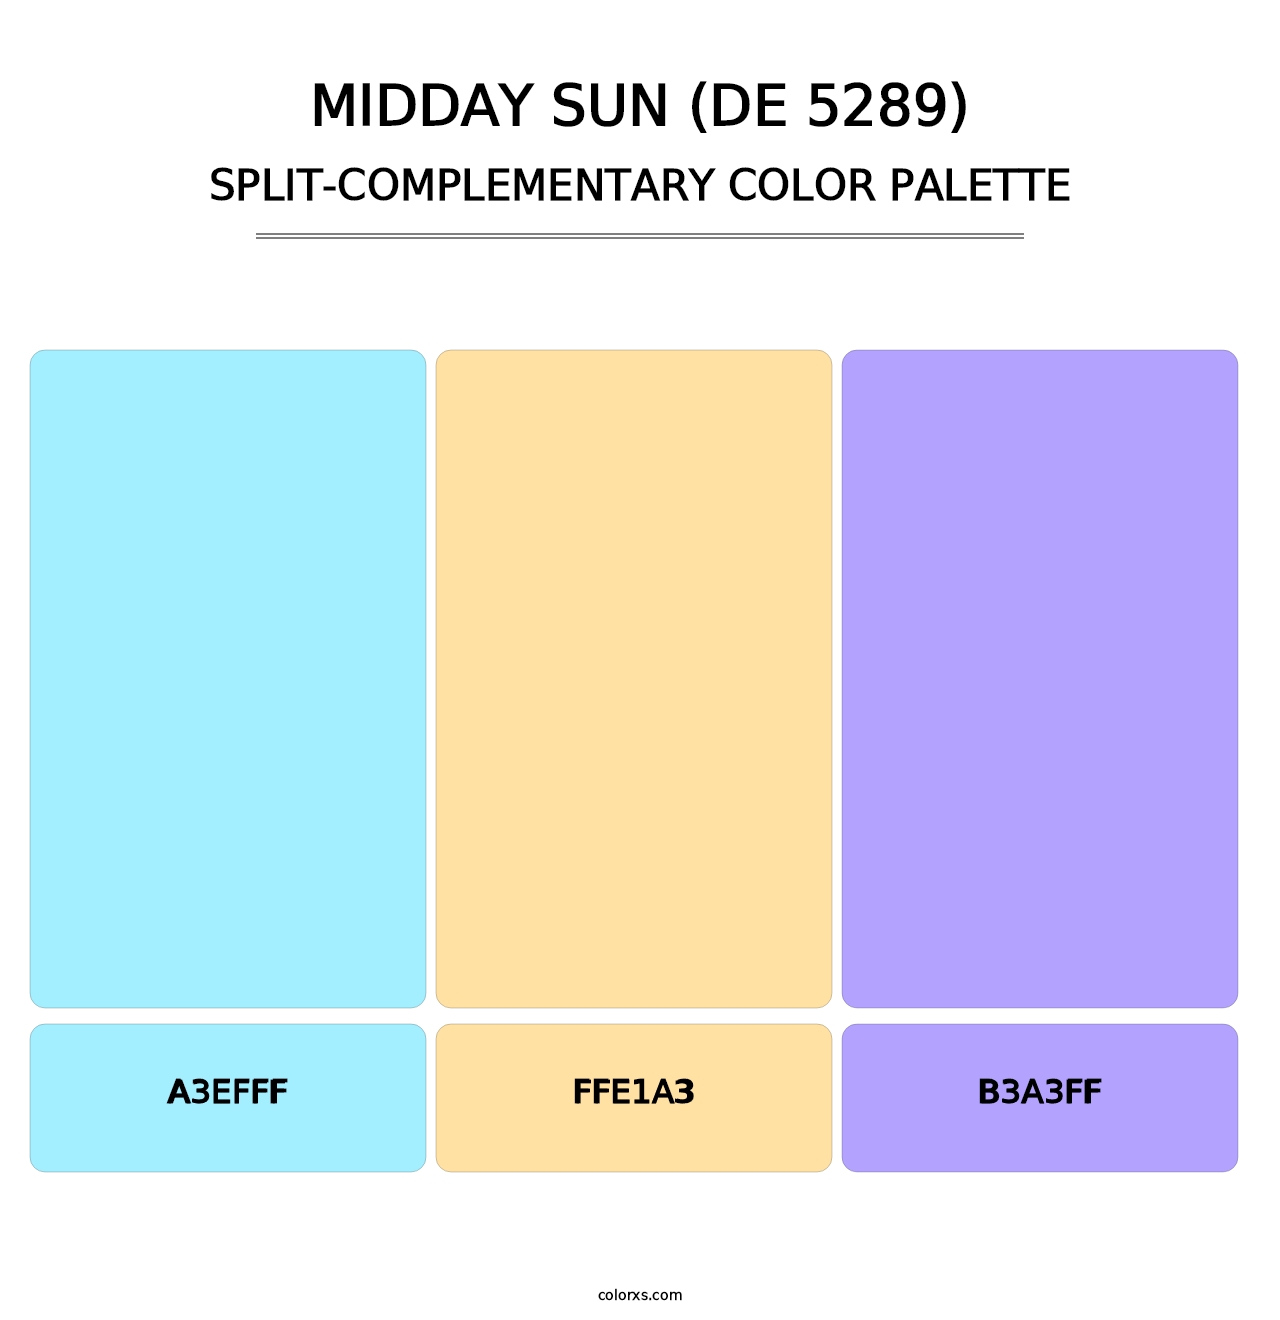 Midday Sun (DE 5289) - Split-Complementary Color Palette